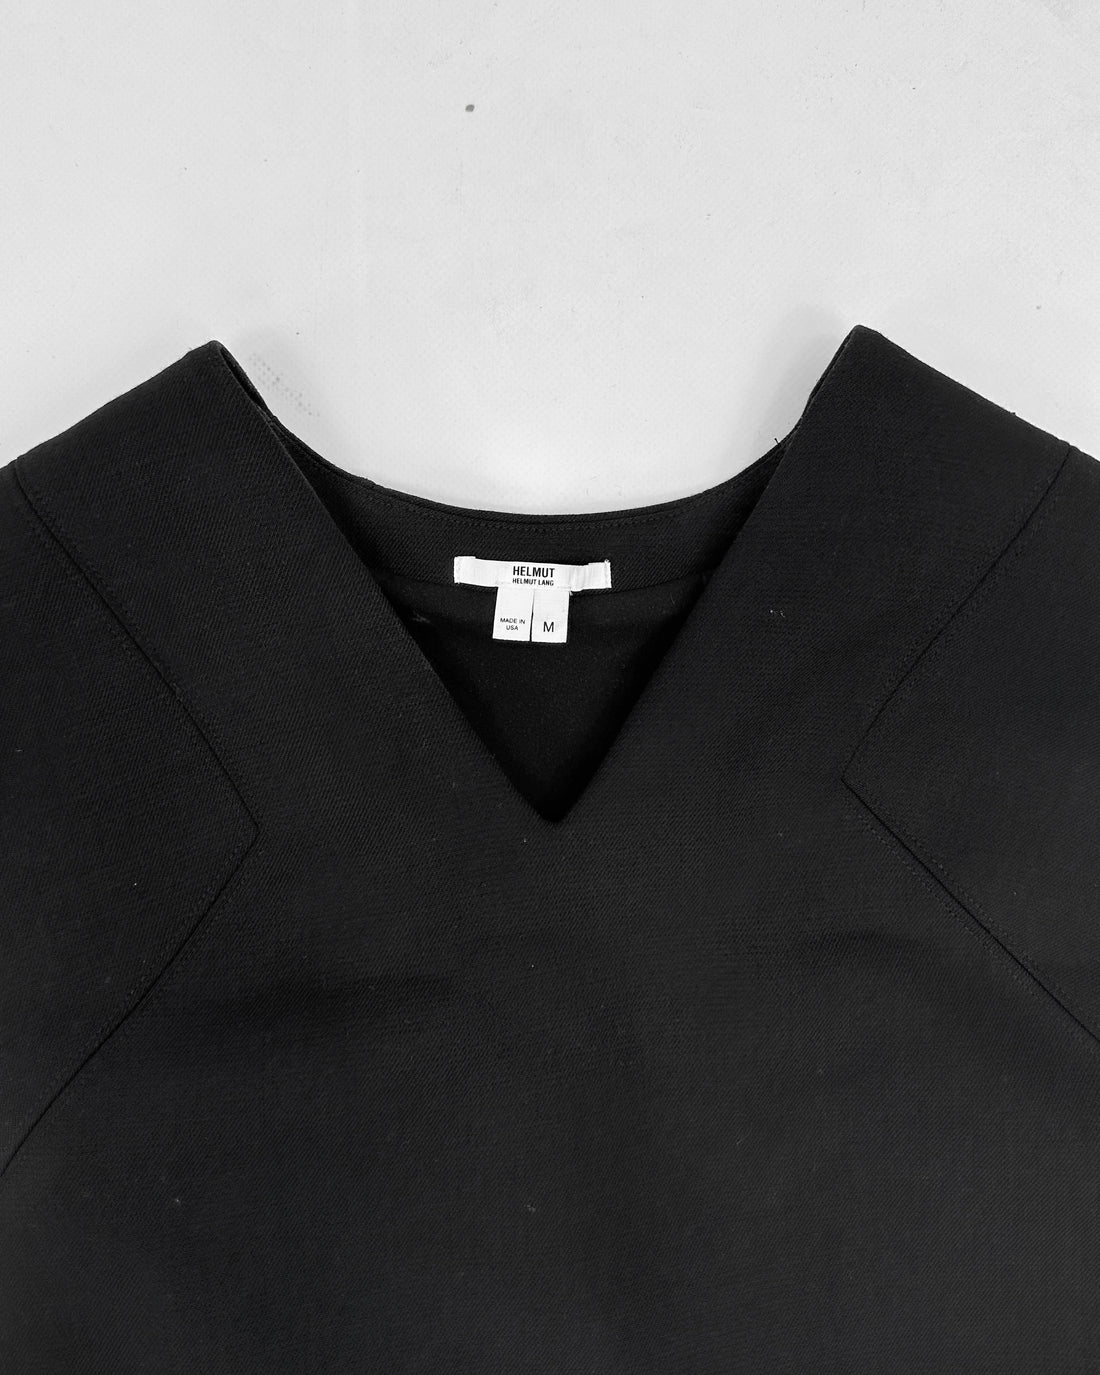 Helmut Lang Full Zipped Black Dress Made in Usa 1990's